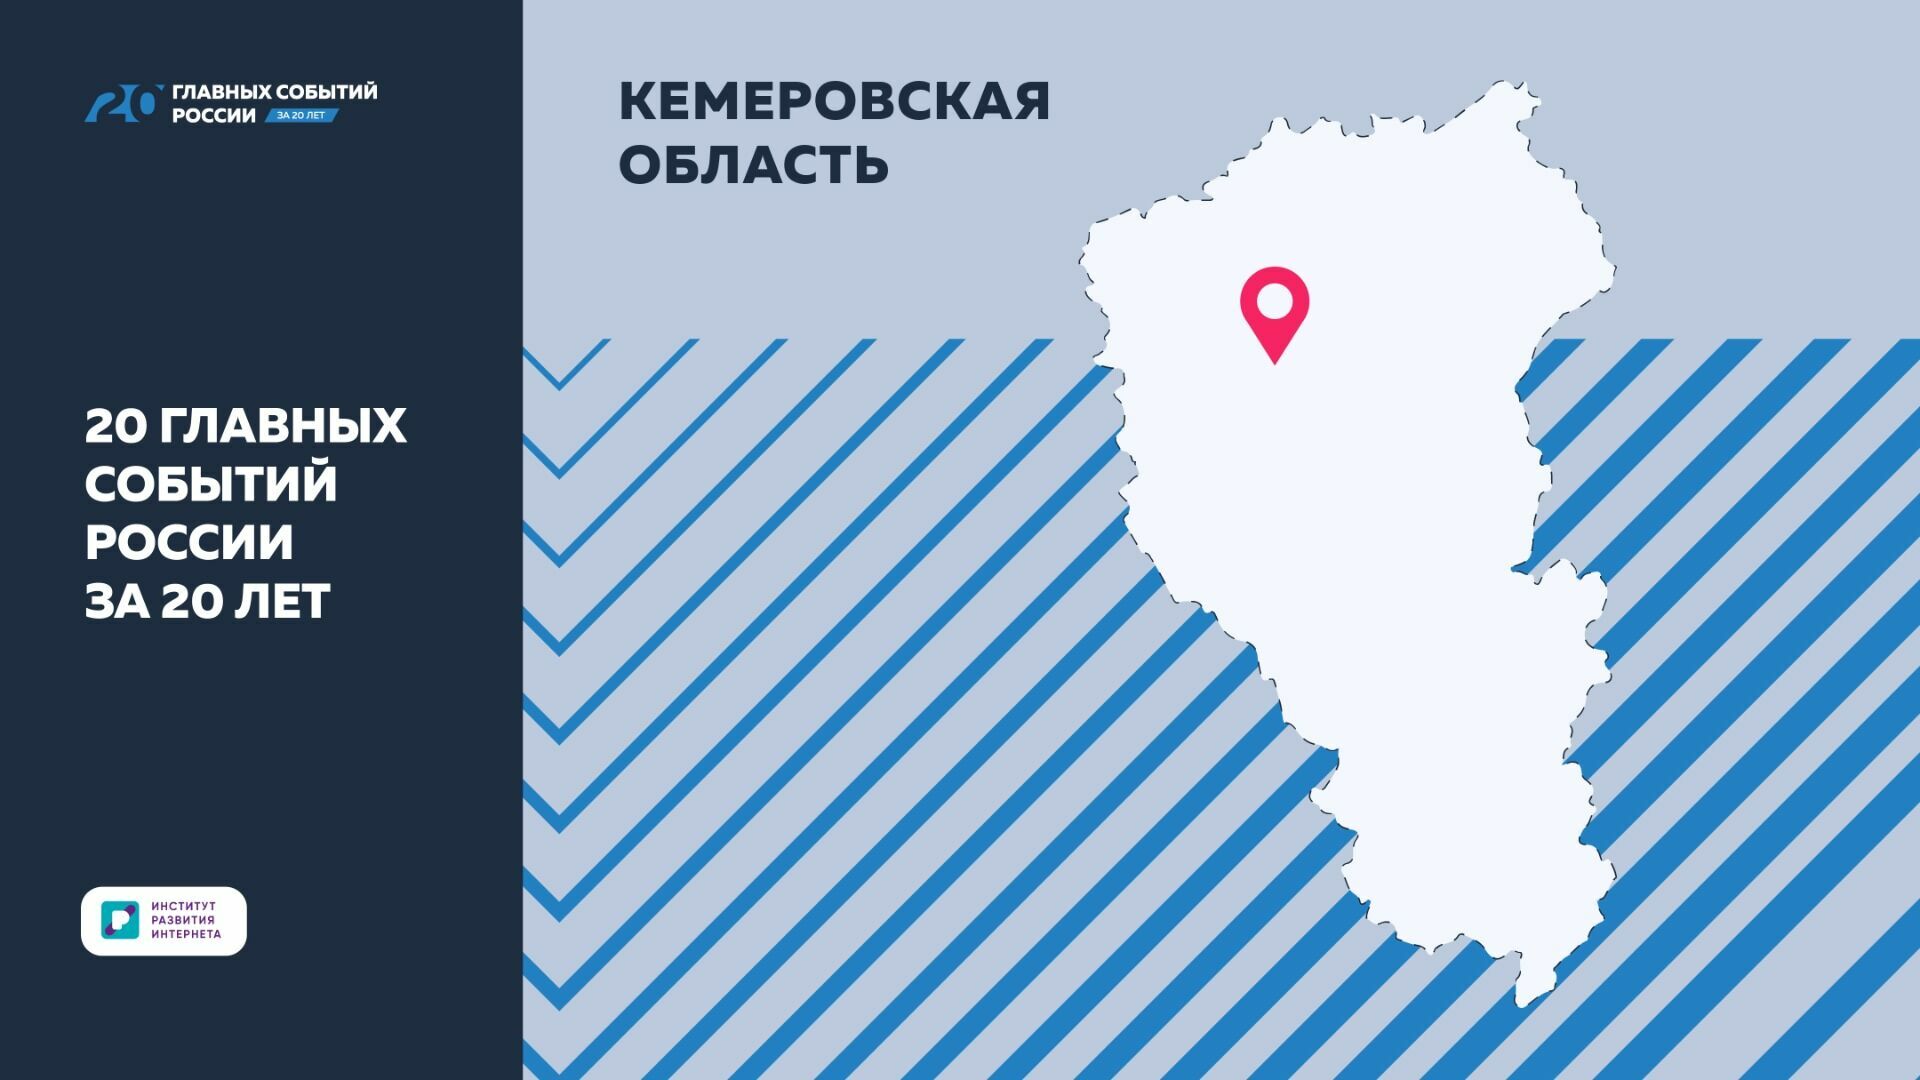 Эксперты ИРИ отметили важные достижения Кемеровской области за 20 лет